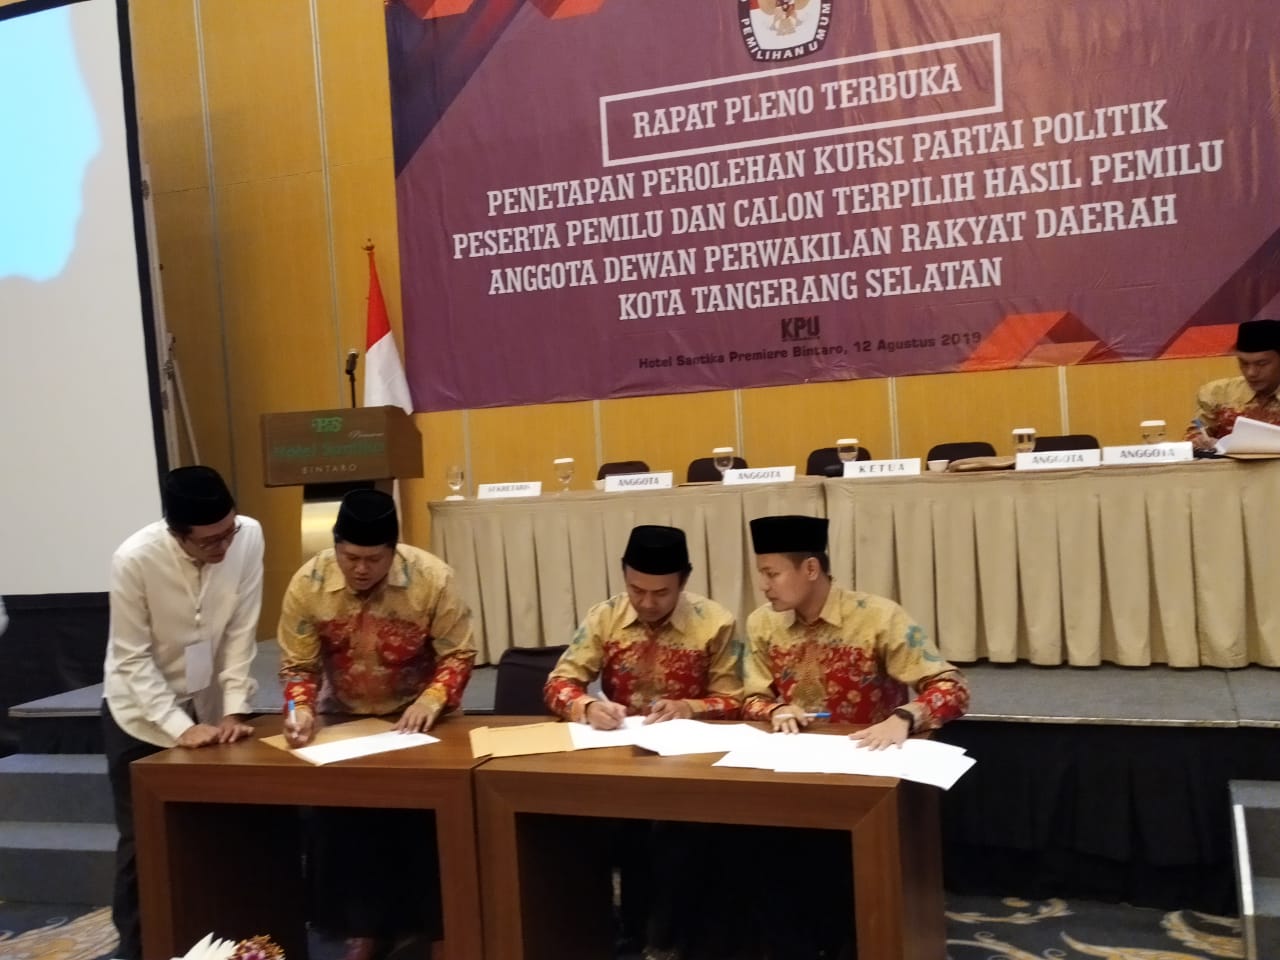 KPU Tangsel menggelar rapat pleno penetapan perolehan kursi partai politik peserta pemilu dan calon terpilih hasil pemilu anggota dewan perwakilan rakyat daerah kota Tangerang Selatan.